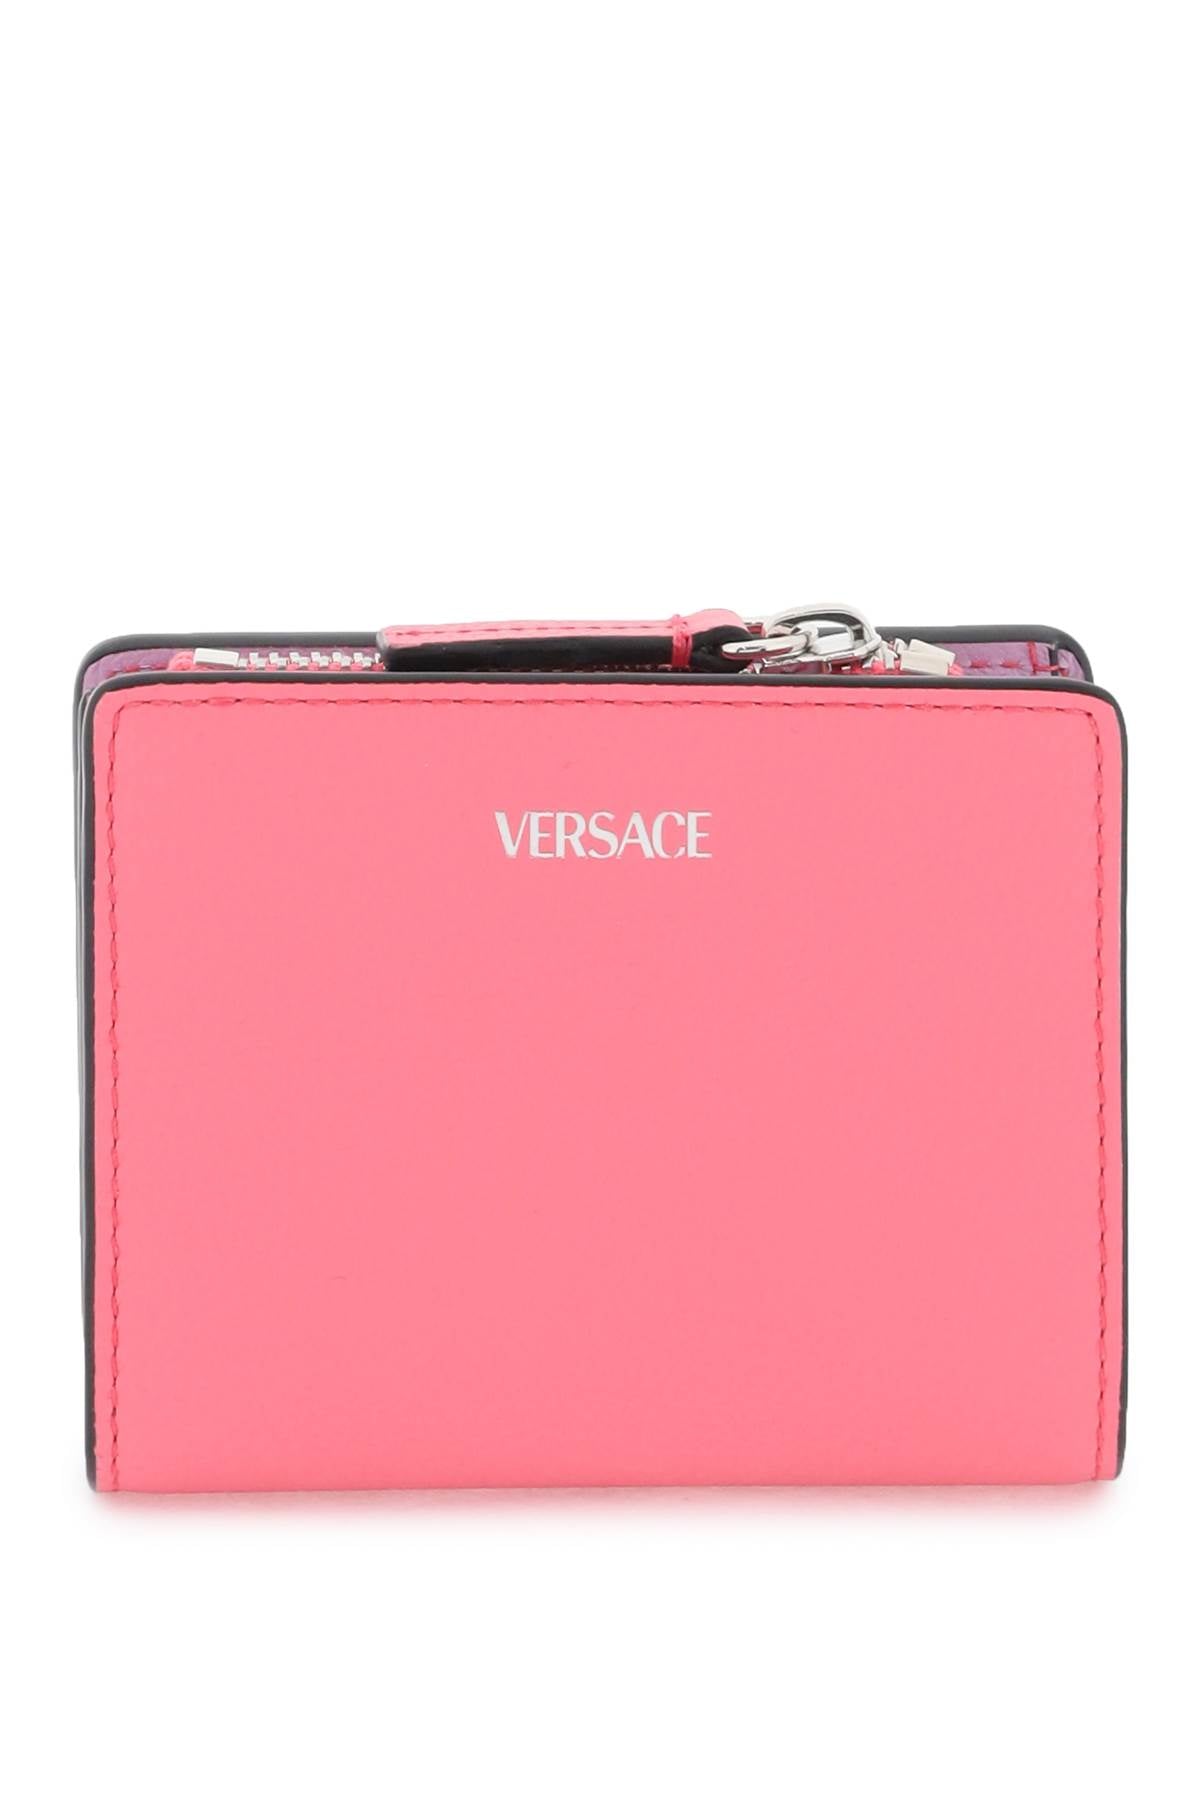 Versace Versace 'la medusa' bifold wallet